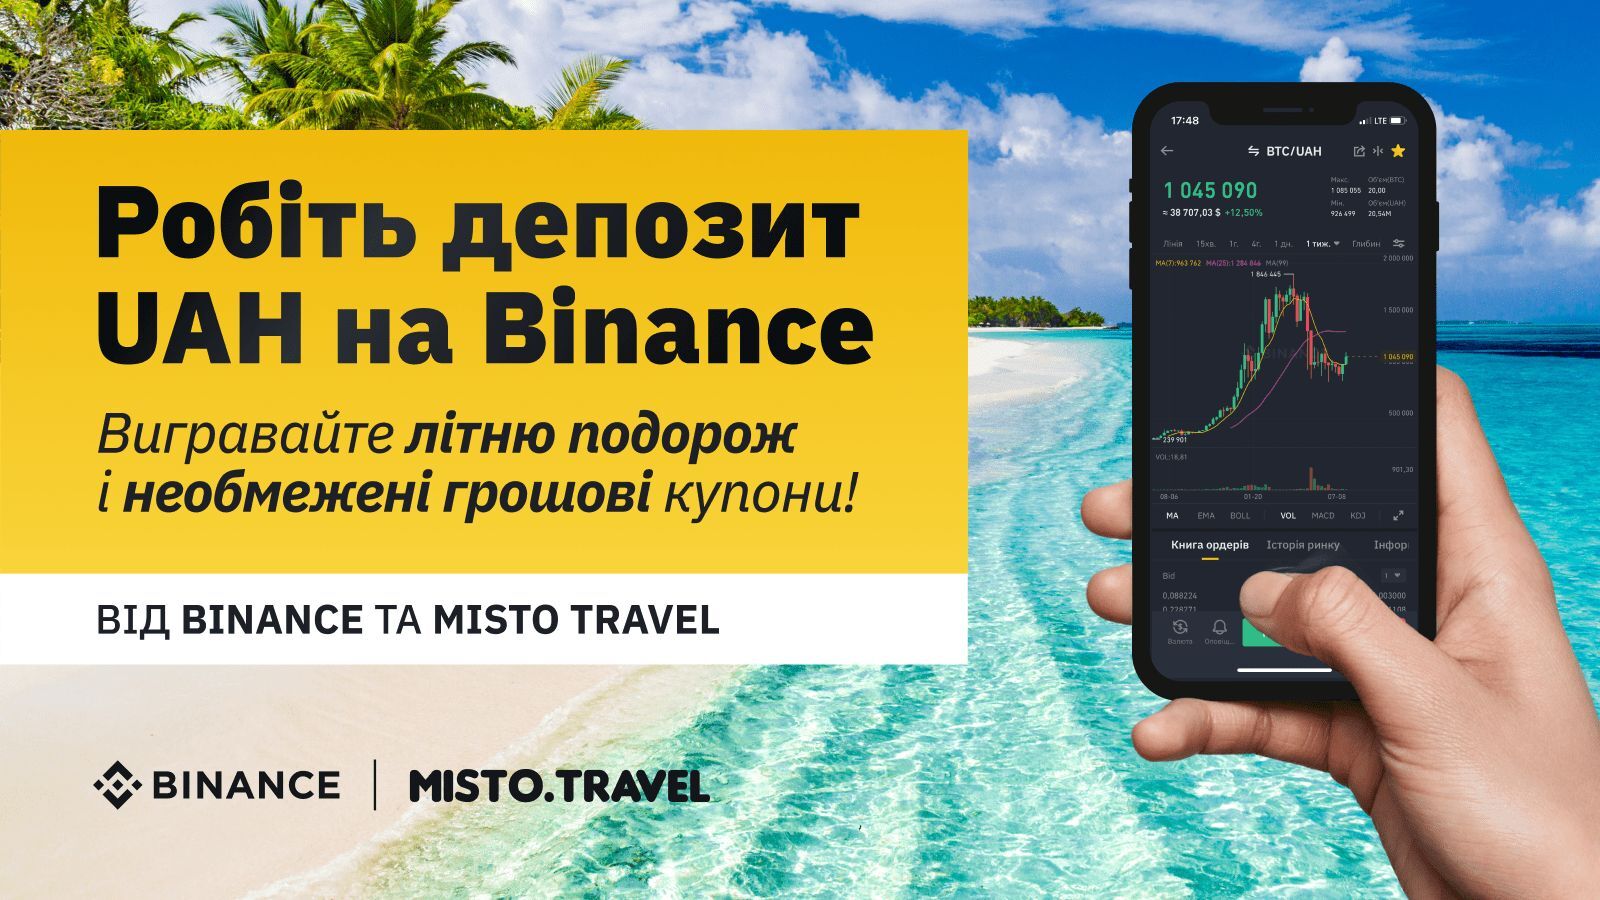 Binance и MistoTravel: делайте депозит в гривне и выигрывайте путевку и денежные купоны